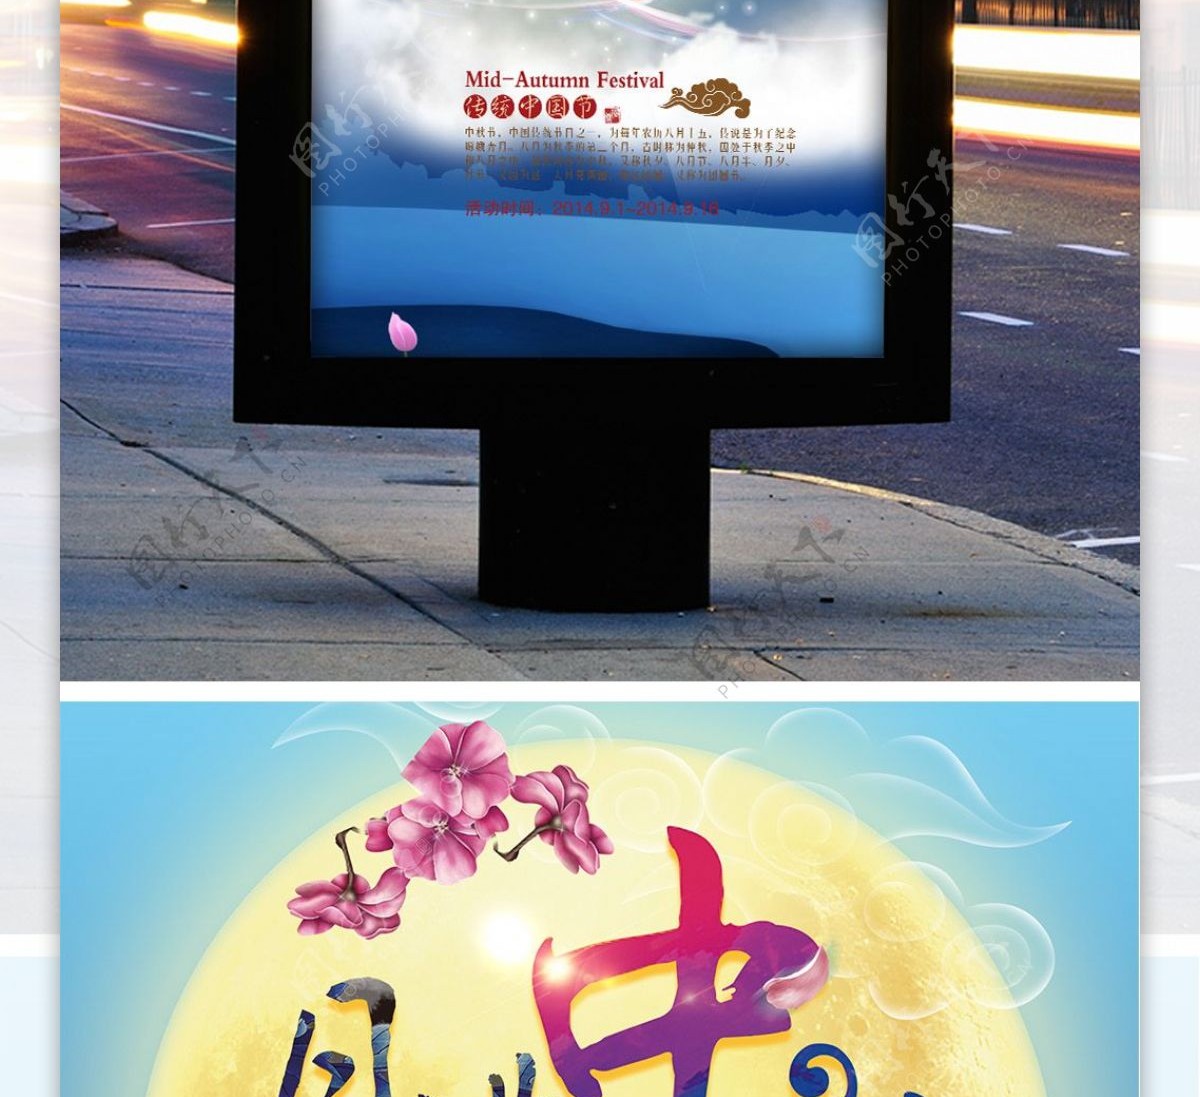 月满唯美中秋节团圆宣传促销海报展板